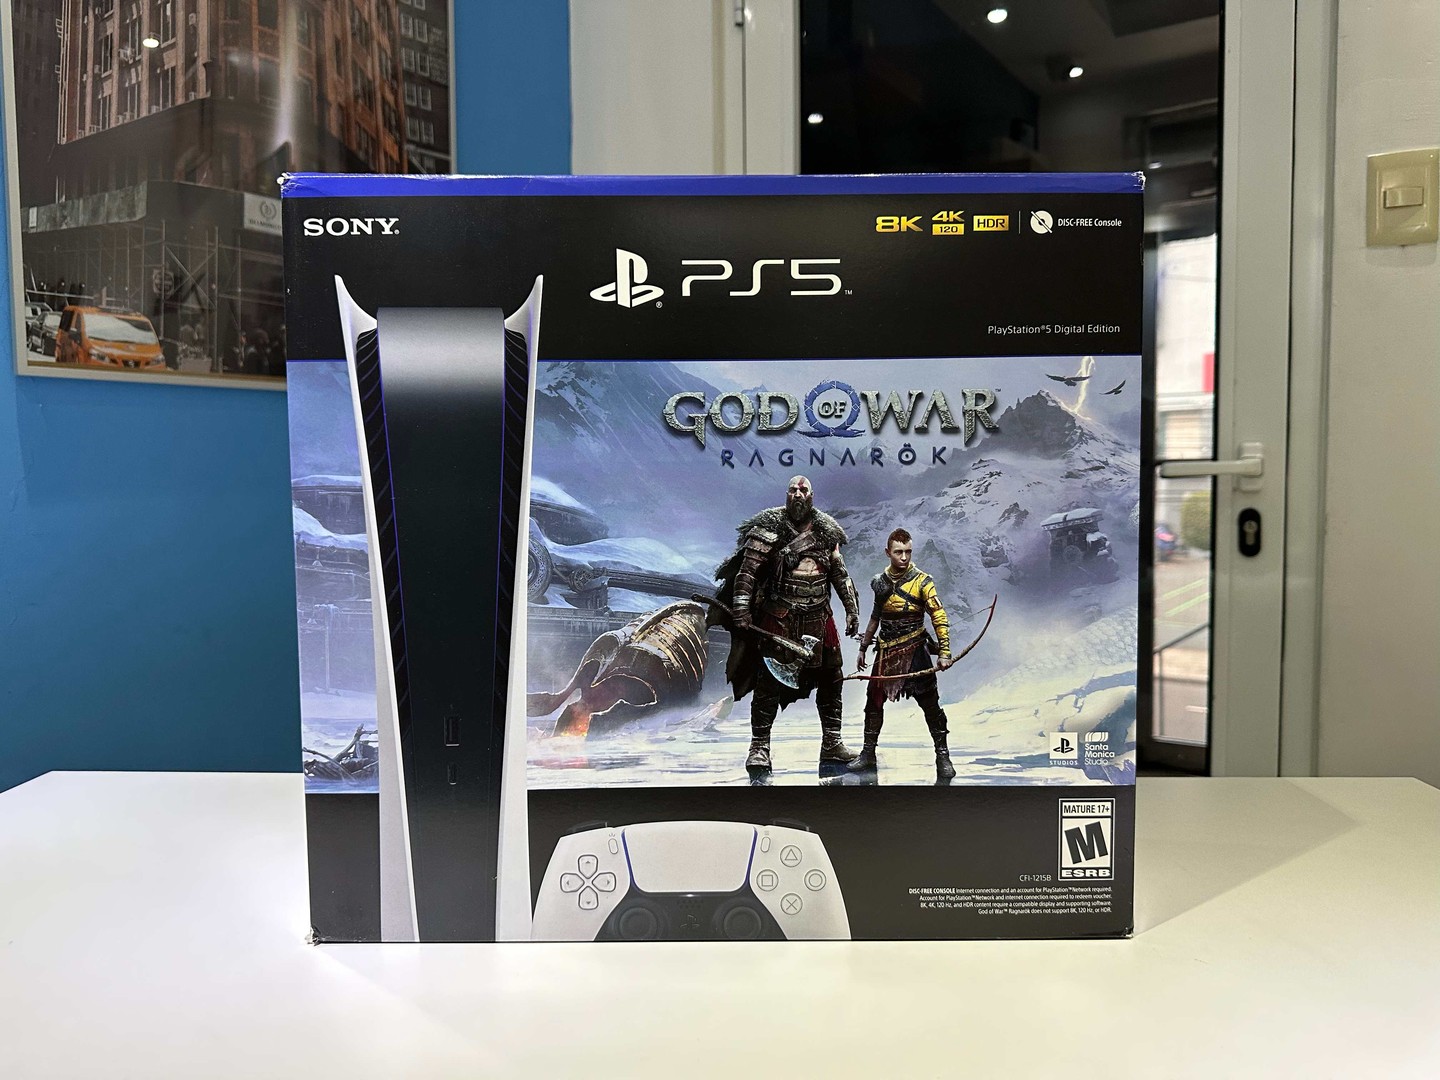 consolas y videojuegos - Vendo PlayStation 5 Edición Digital - Juego GOD OF WAR -Nuevos RD$ 331,400 NEG